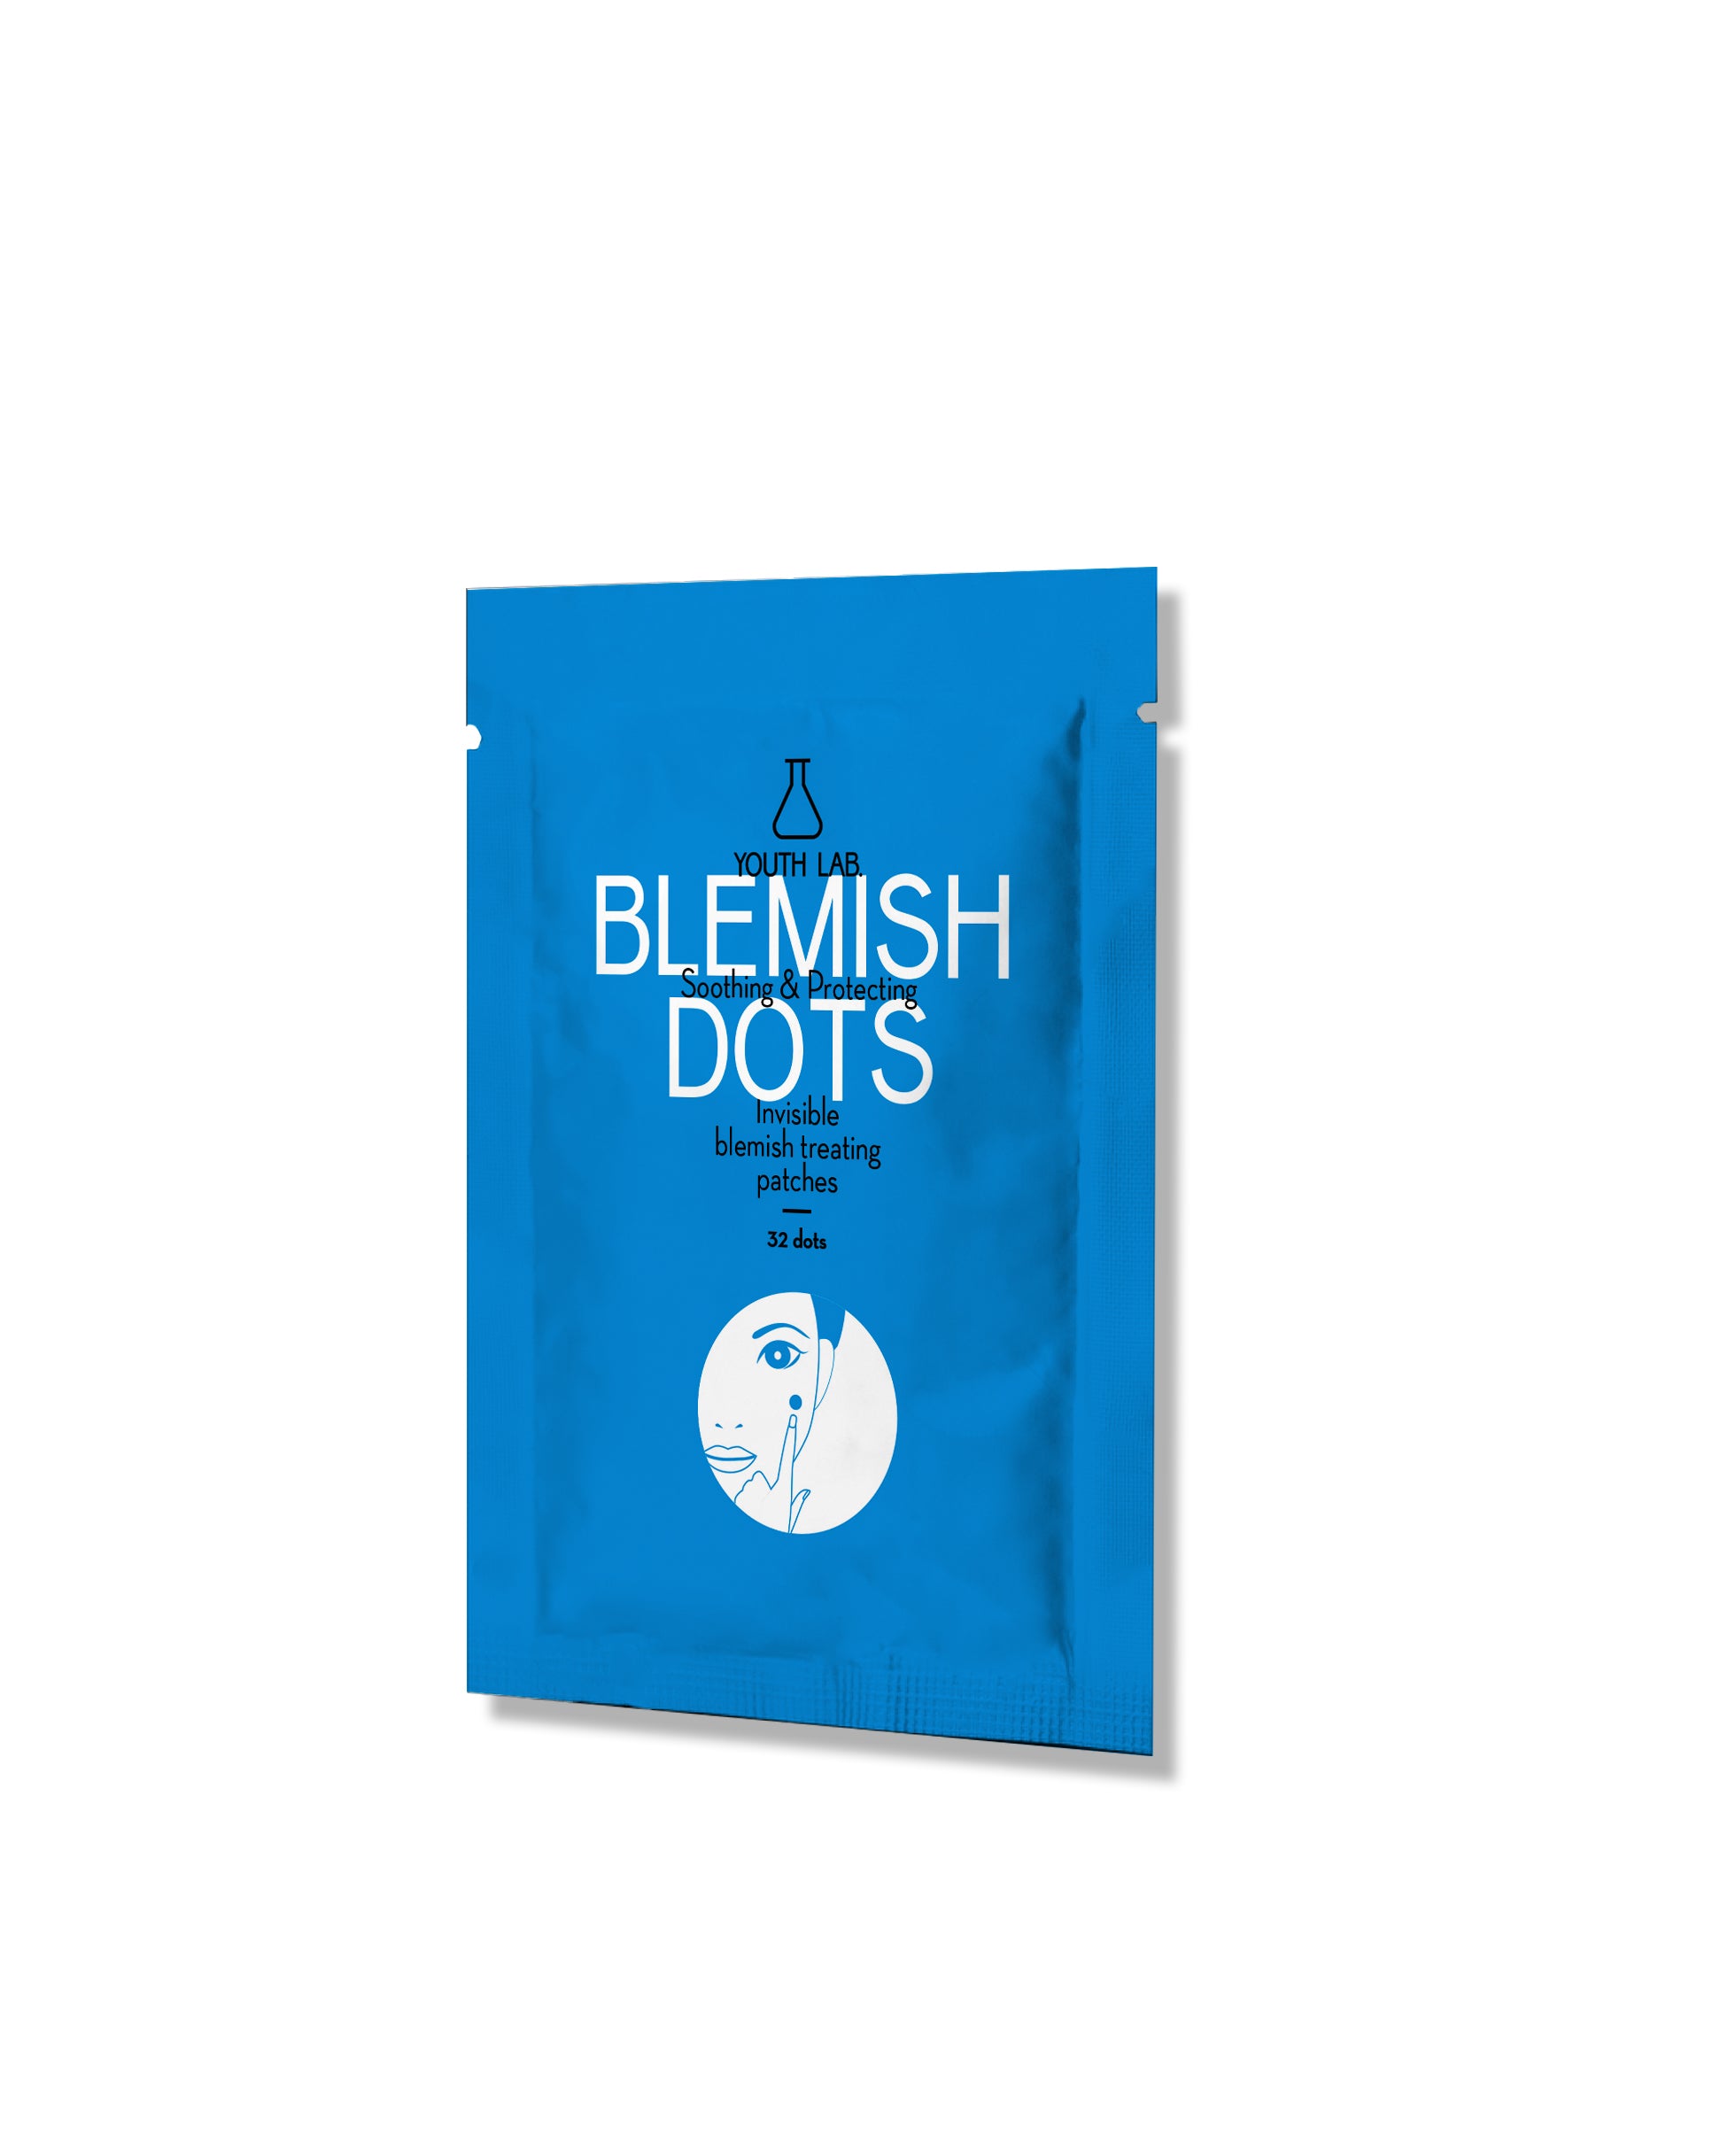 Blemish dots - voor puistjes/acne Youth lab